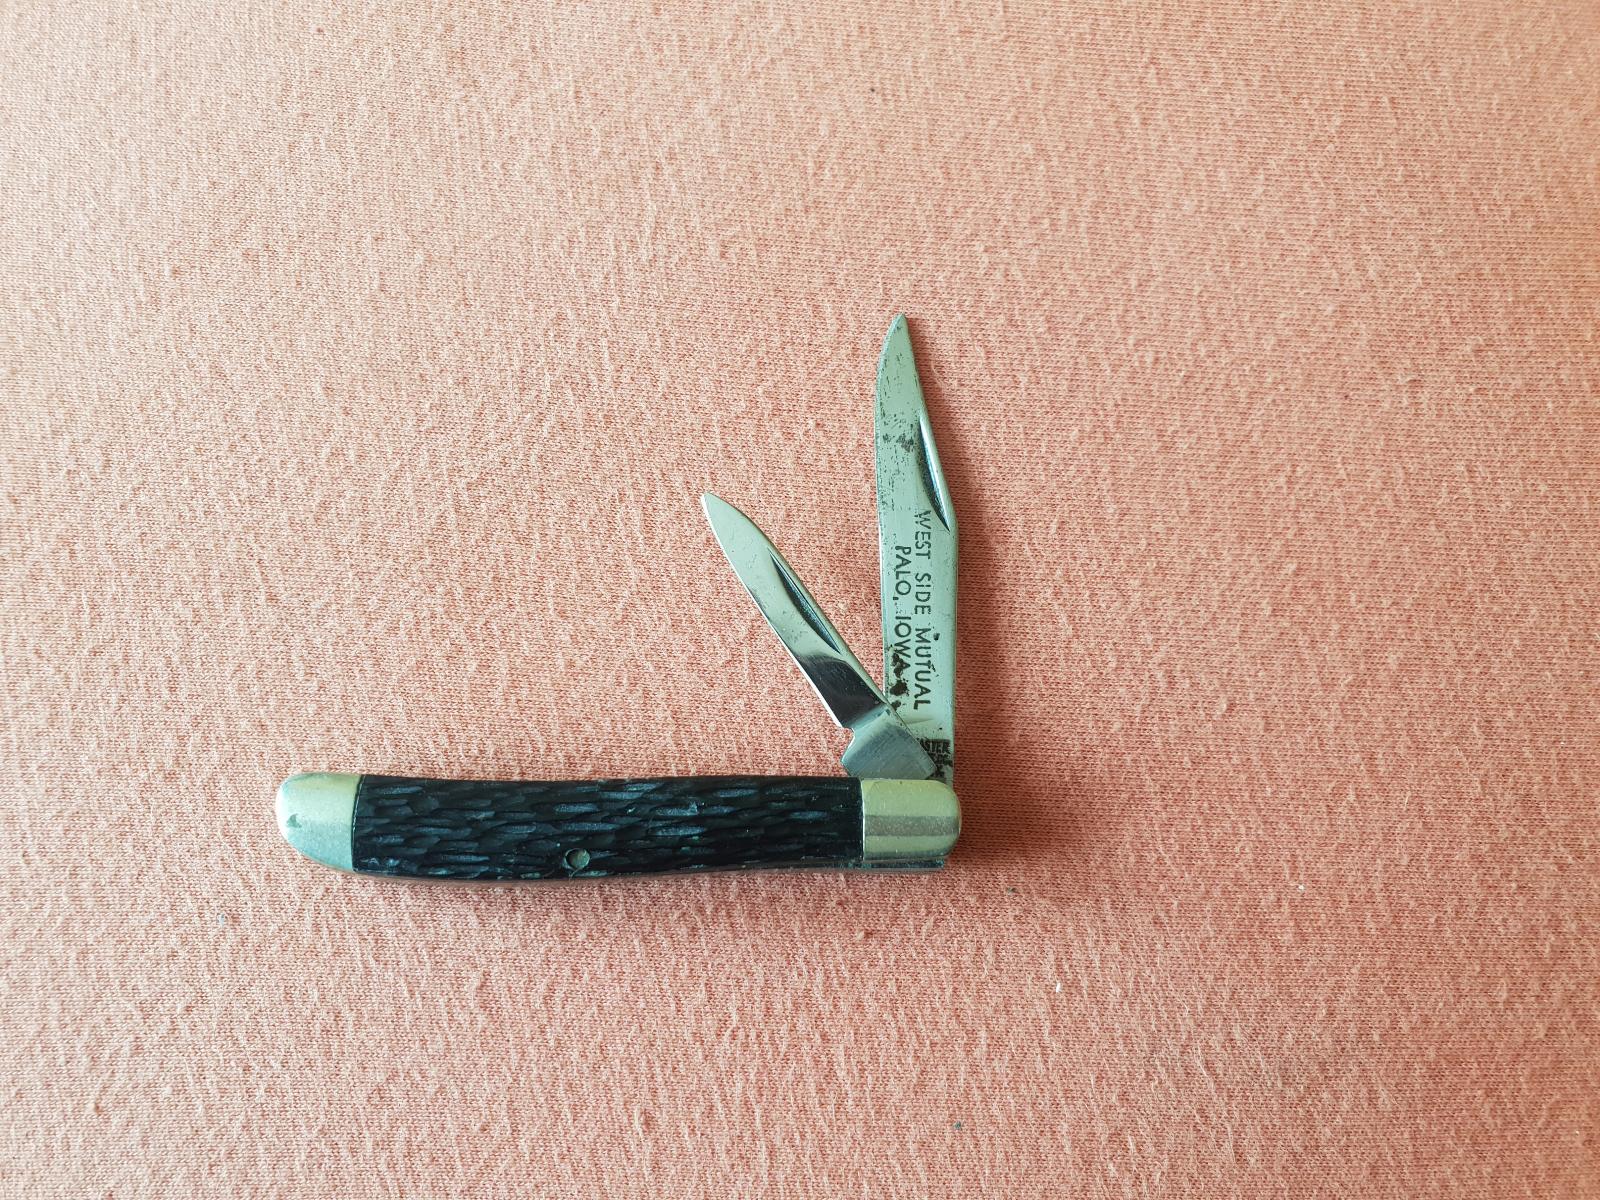 Starý nôž KUTMASTER UTICA CUT. CO. UTICA N.Y. IOWA, nebrúsený, 1950 - Vojenské zberateľské predmety